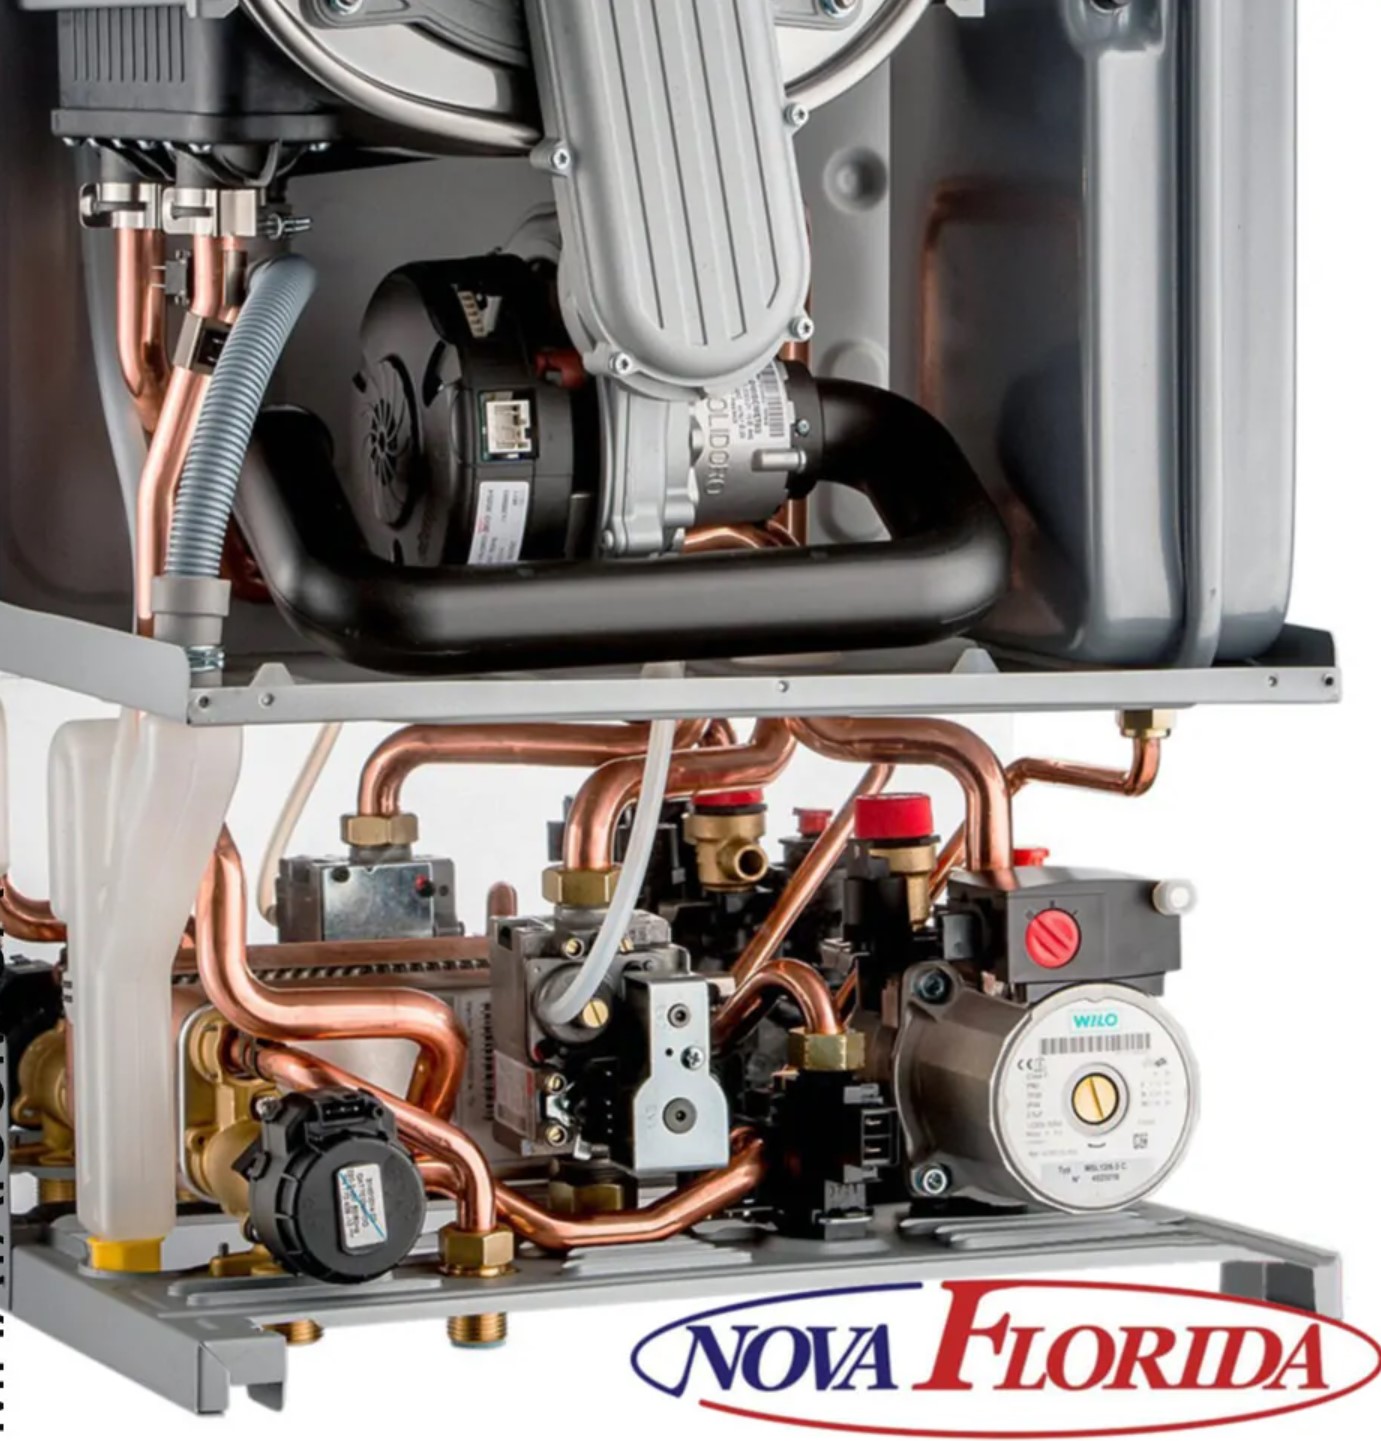 Газовый котел Nova Florida Virgo RBTFS 28 отзывы - изображения 5